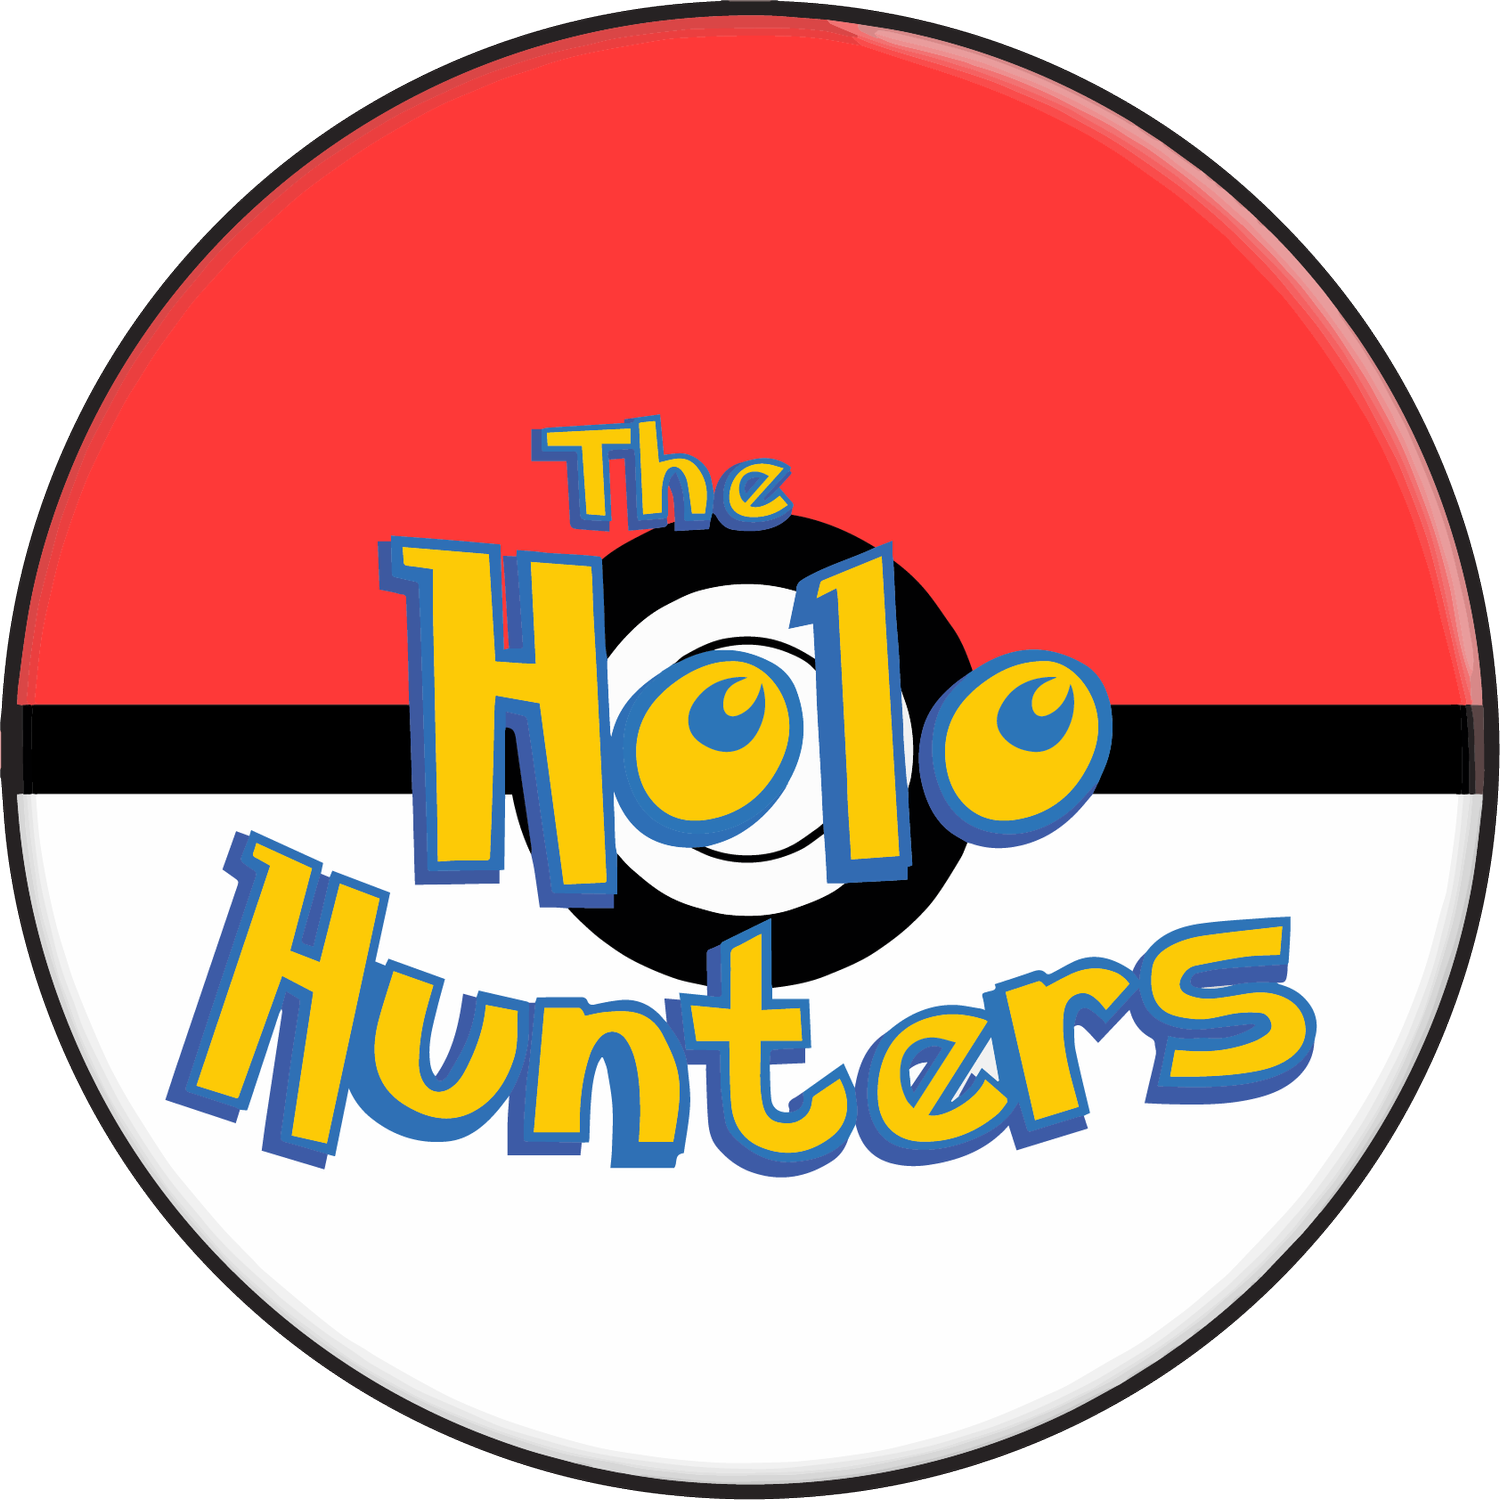 The Holo Hunters Poke Shop